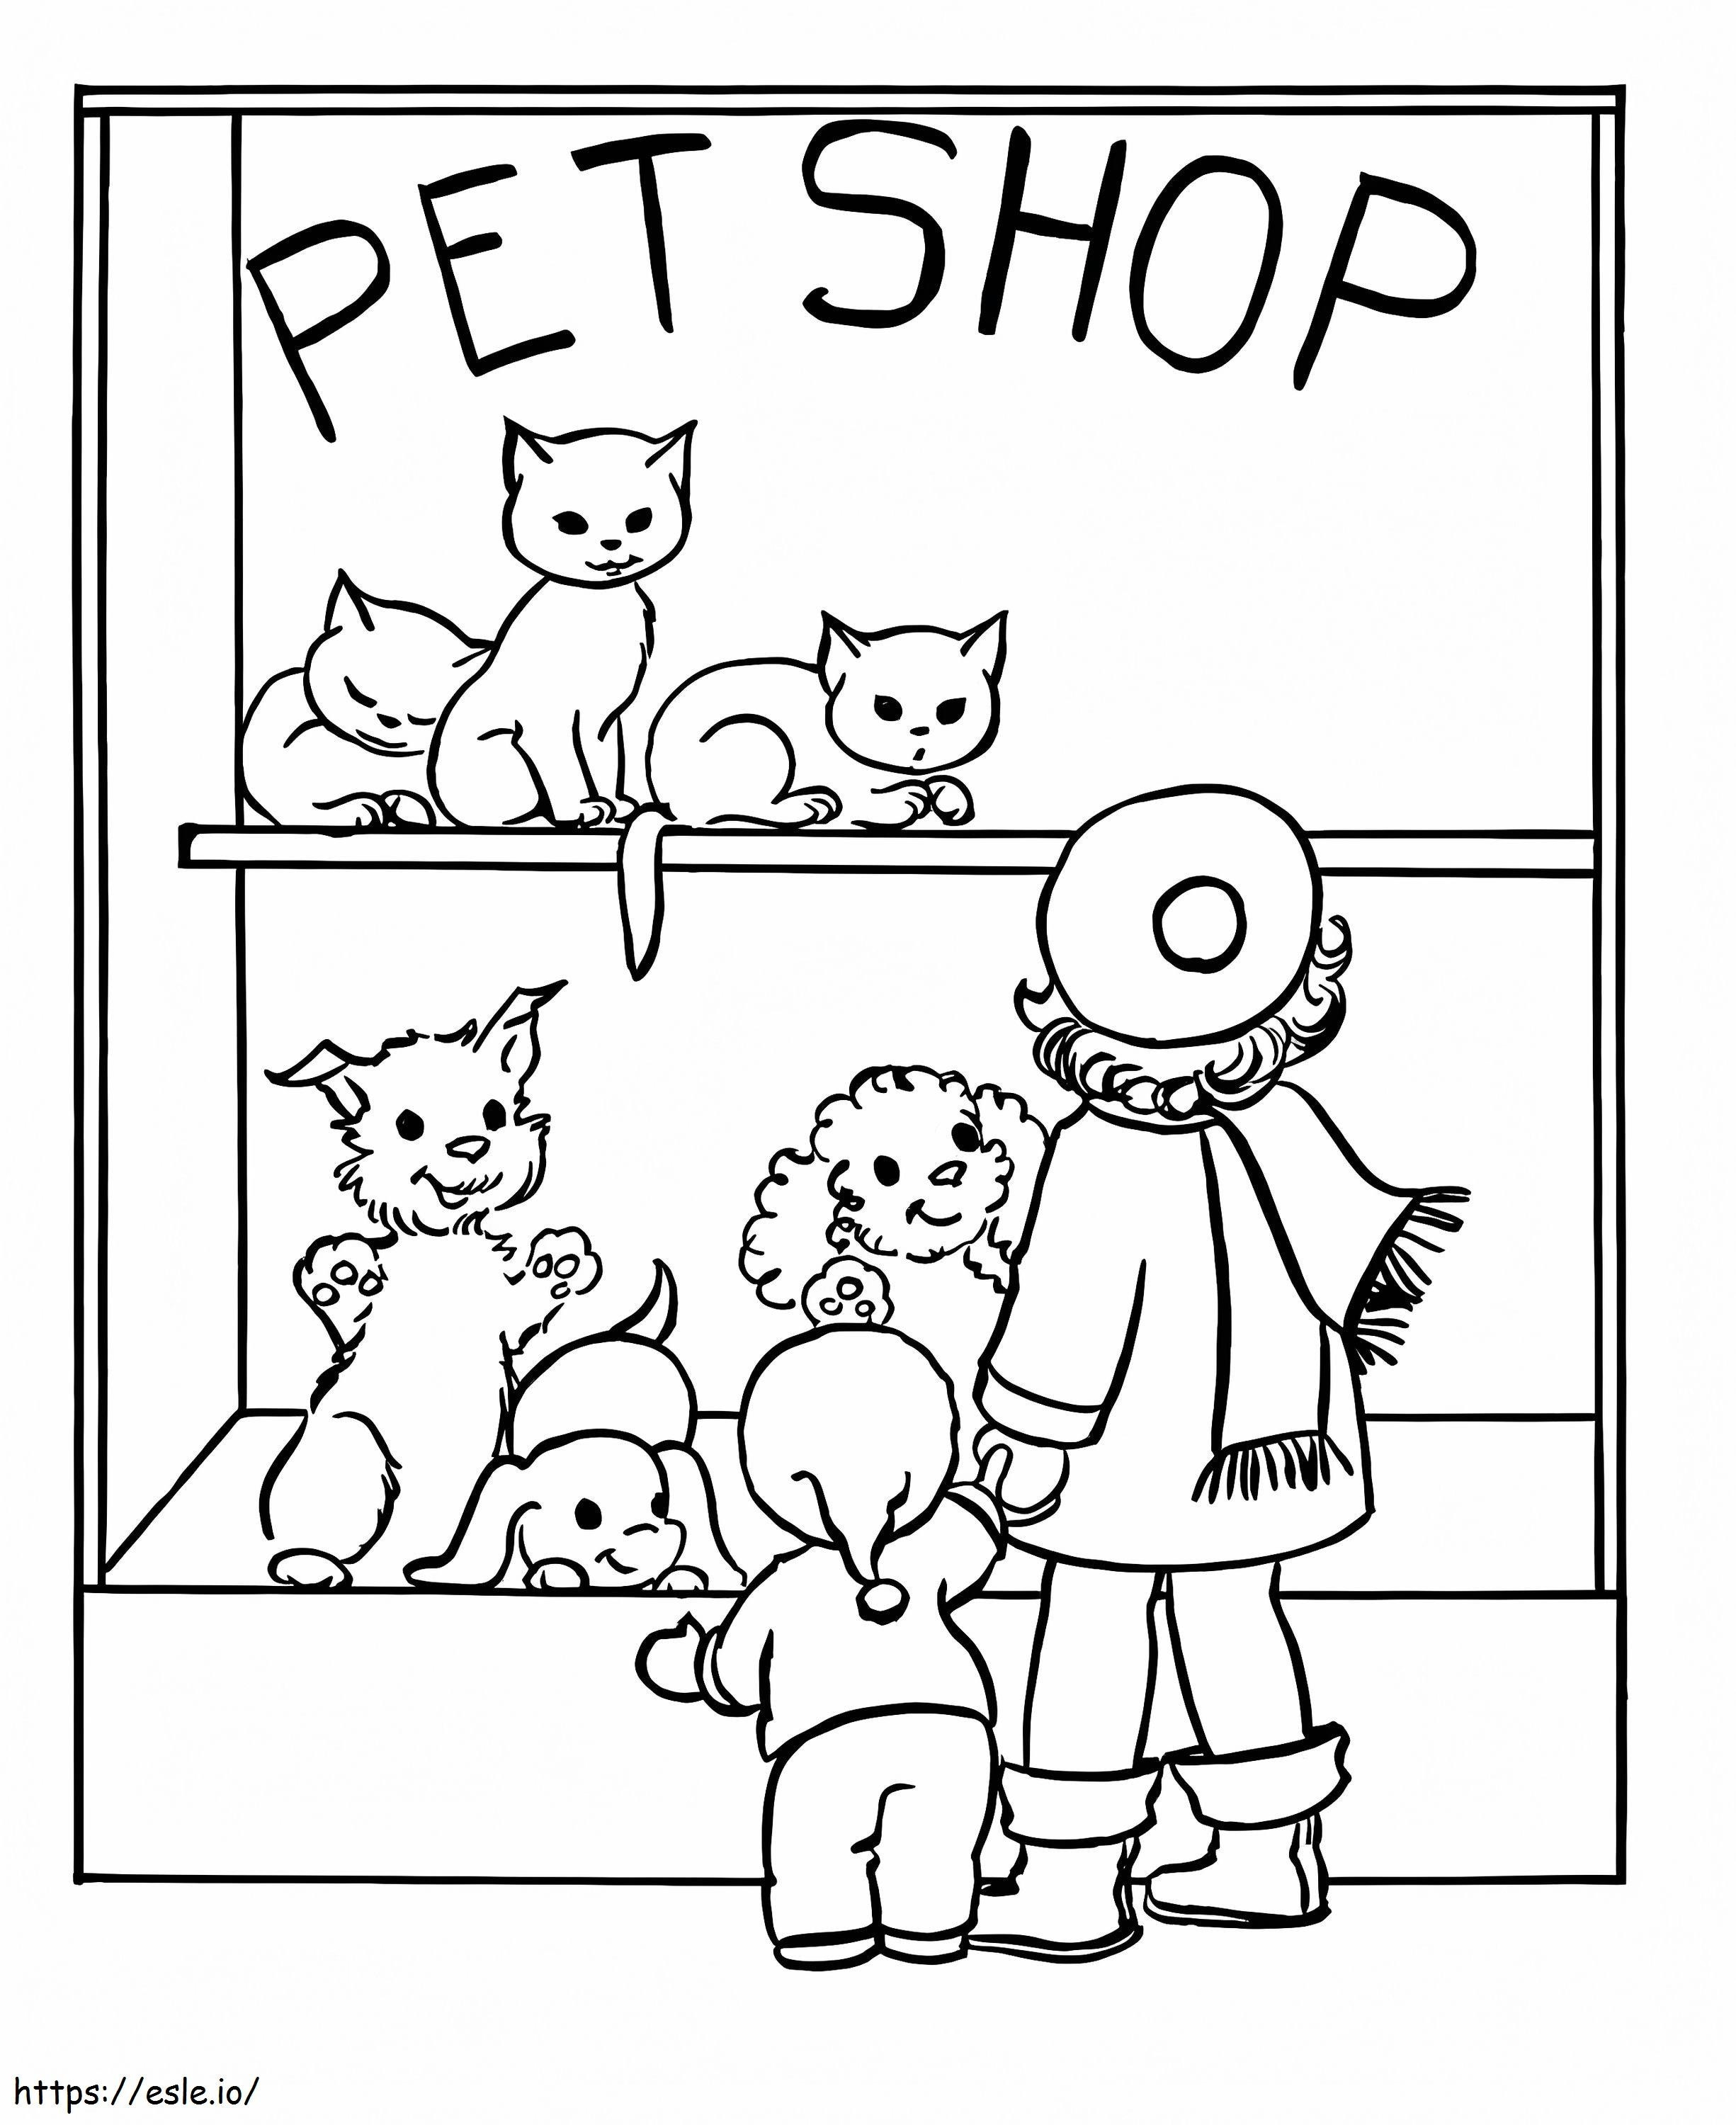 Pet Shop coloring page